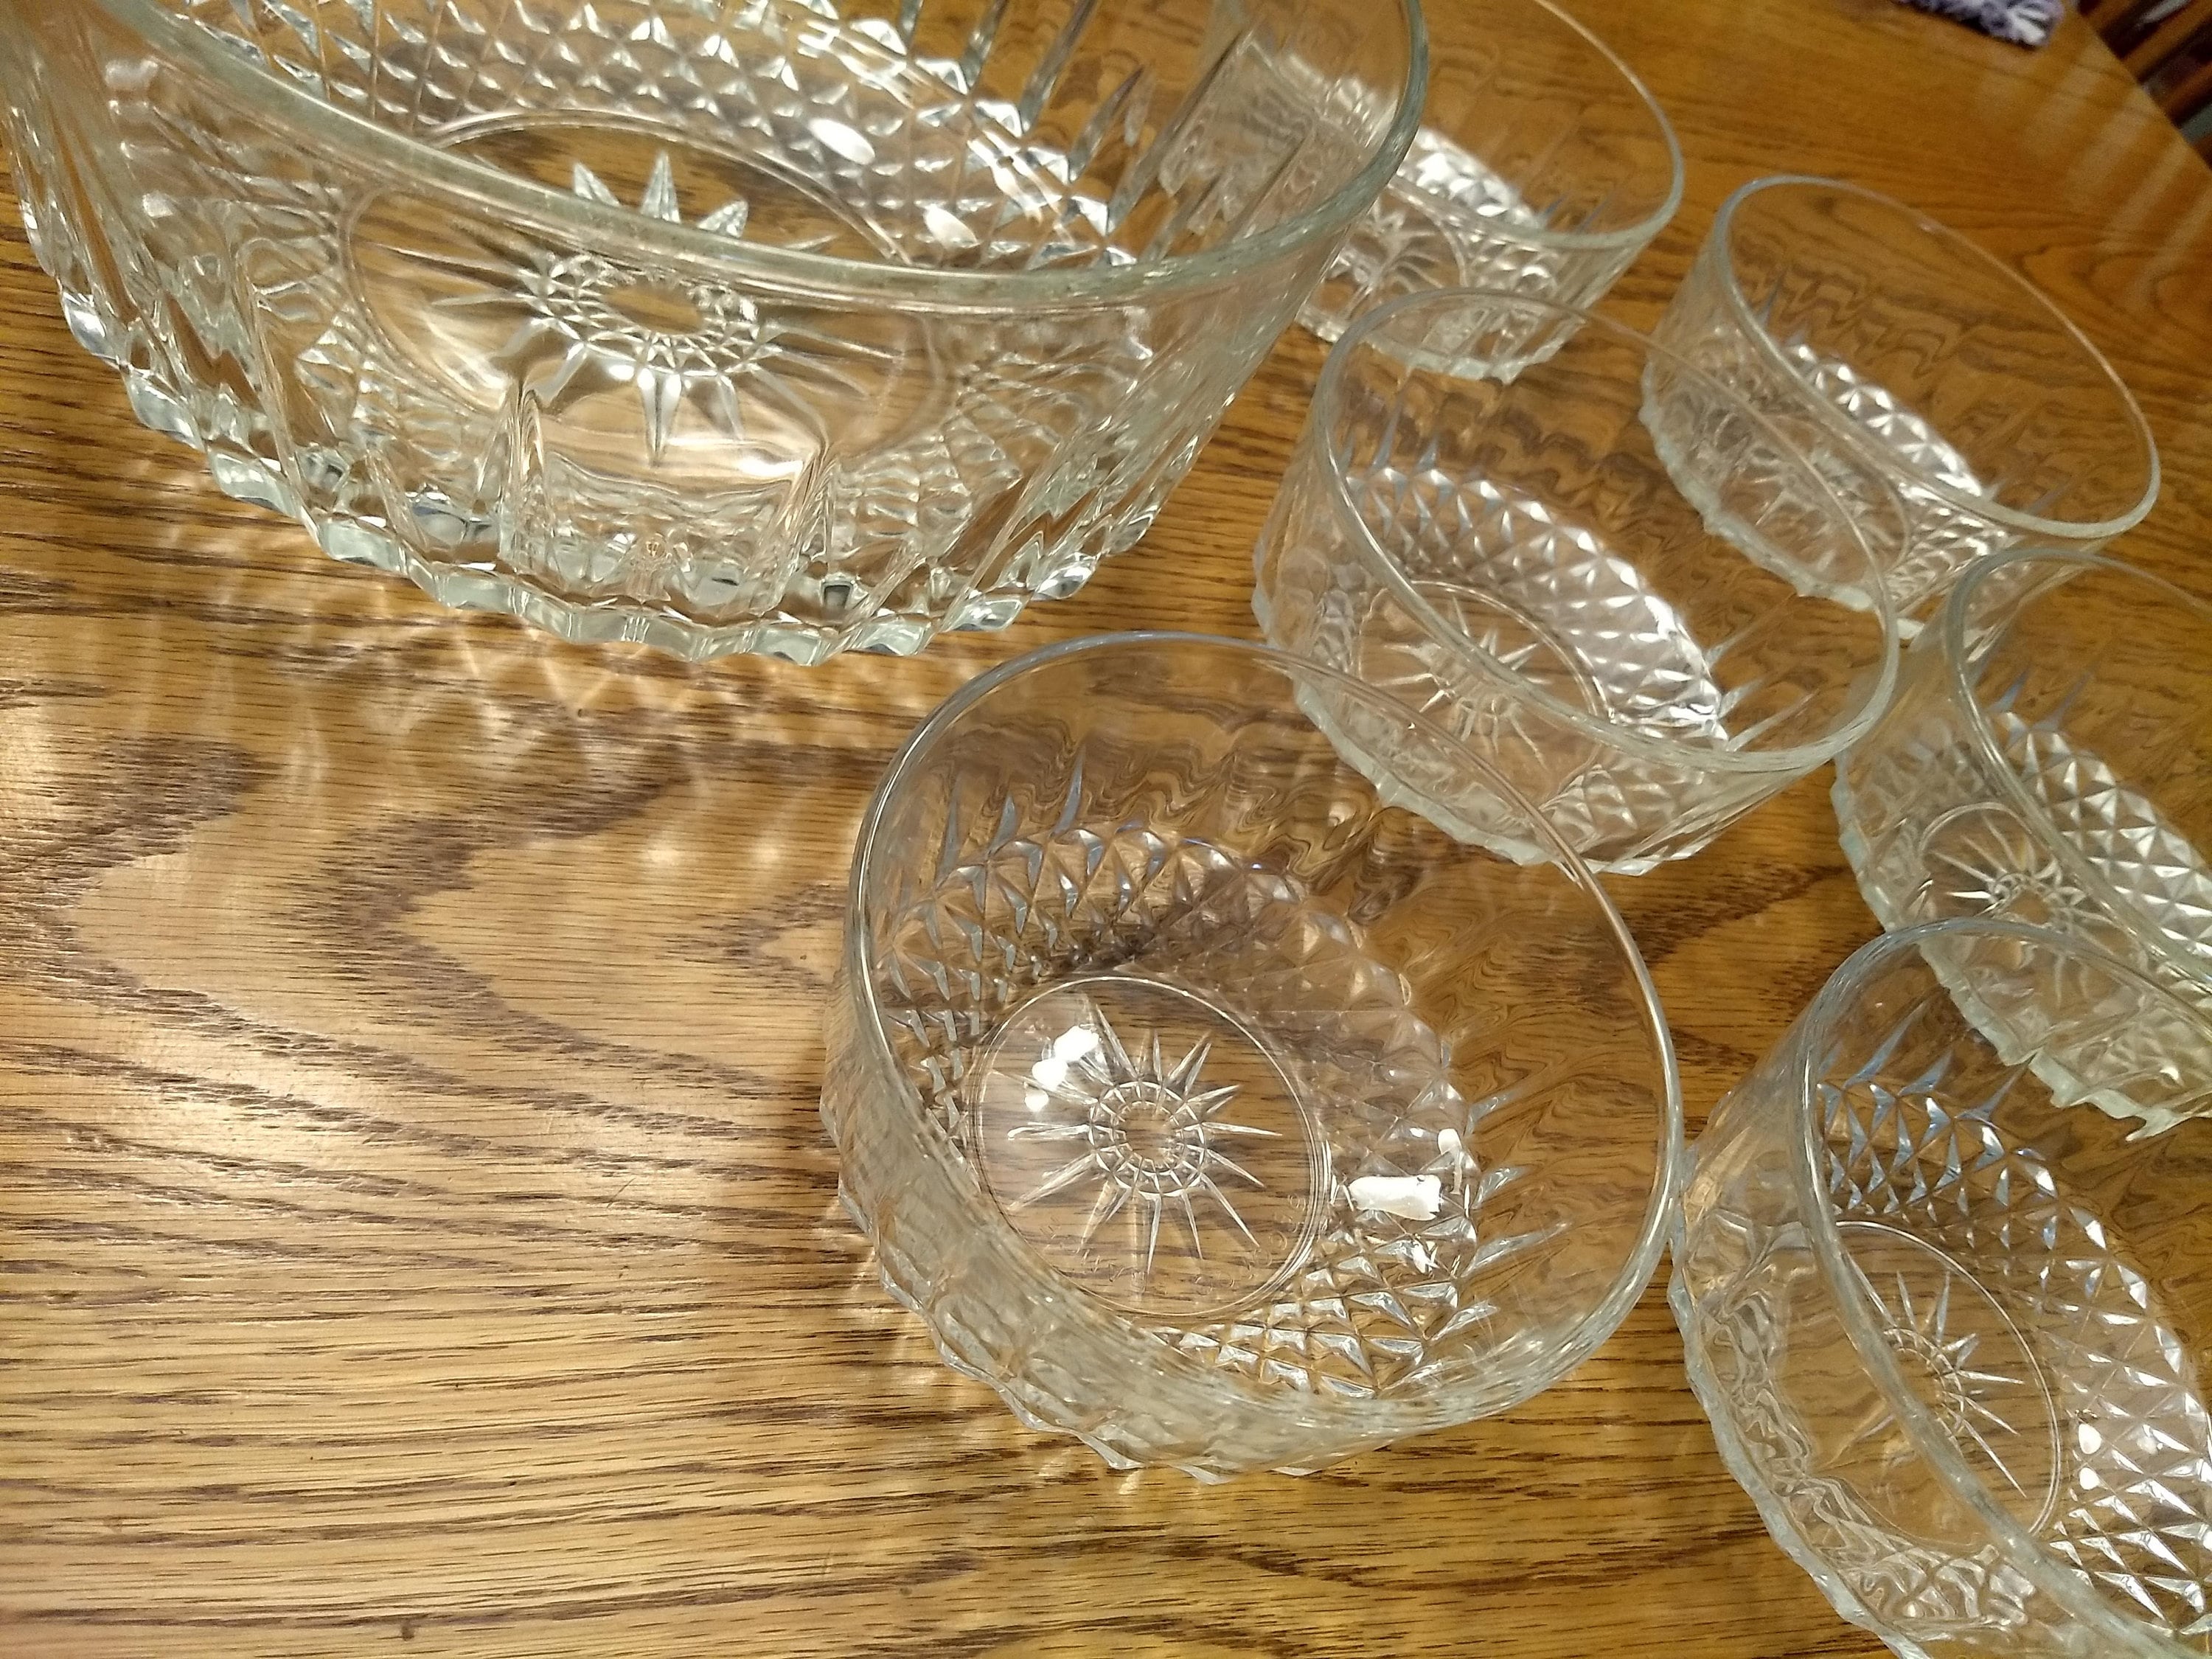 Vintage Arcoroc France Glass Serving Bowl Set Etsy Uk